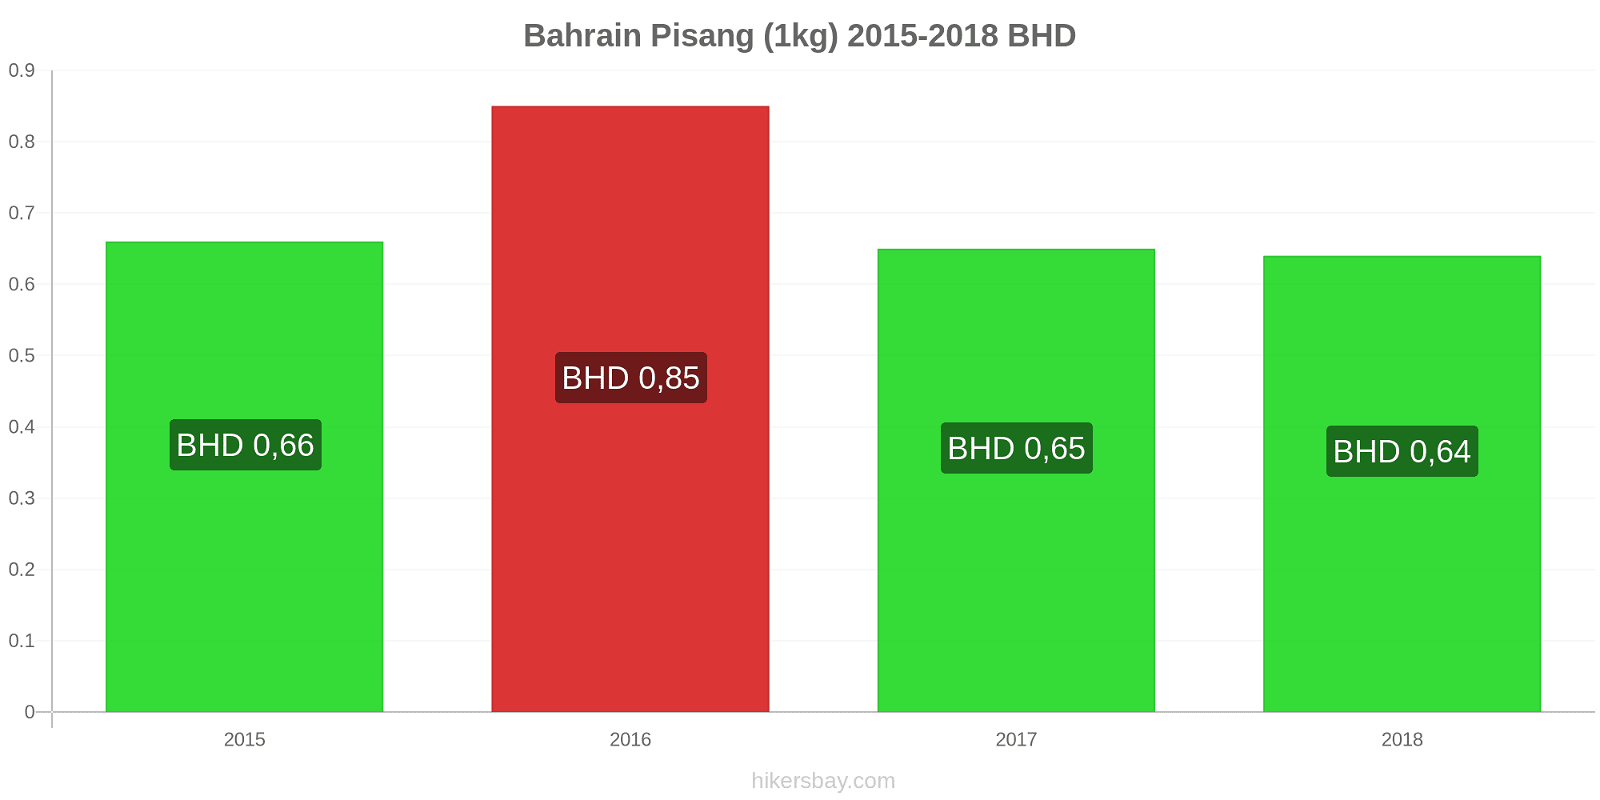 Bahrain perubahan harga Pisang (1kg) hikersbay.com